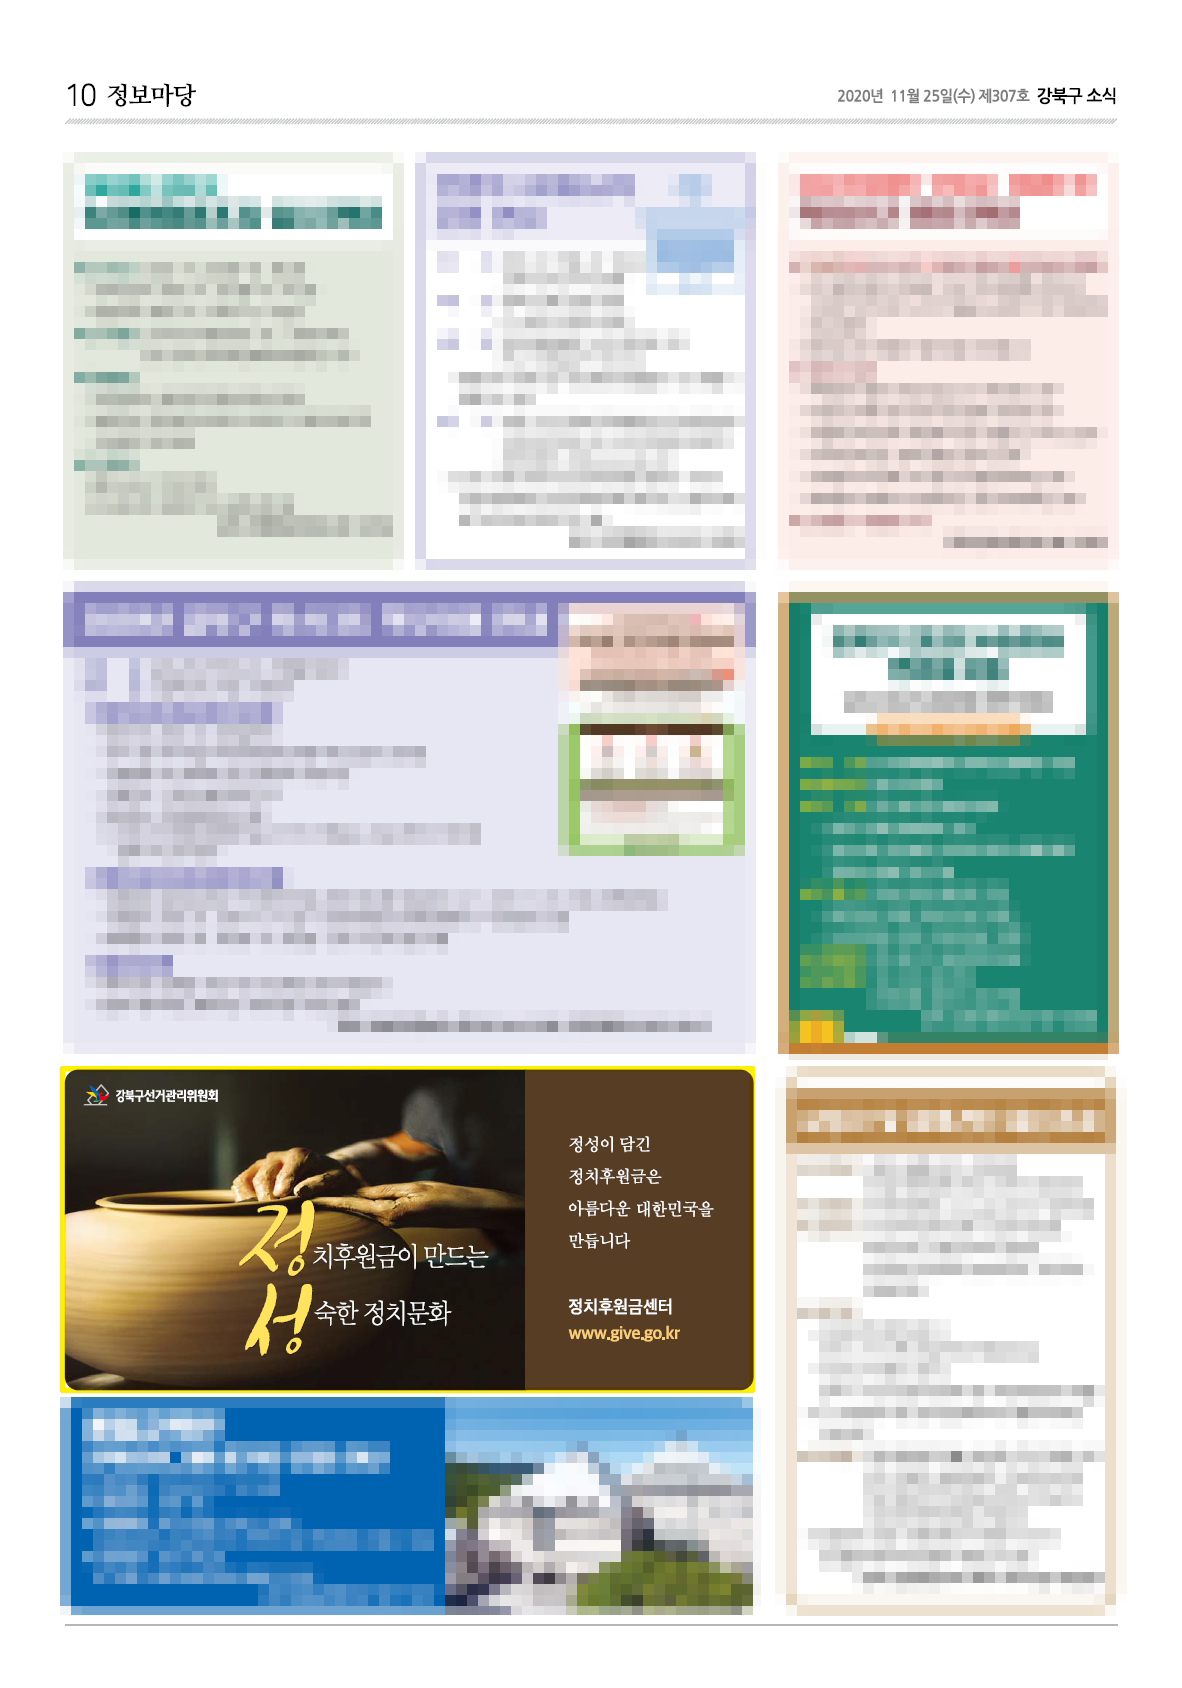 강북구선거관리위원회는 강북구 소식지(12월호)에 정치후원금 활성화 홍보 도안을 게재하였습니다.